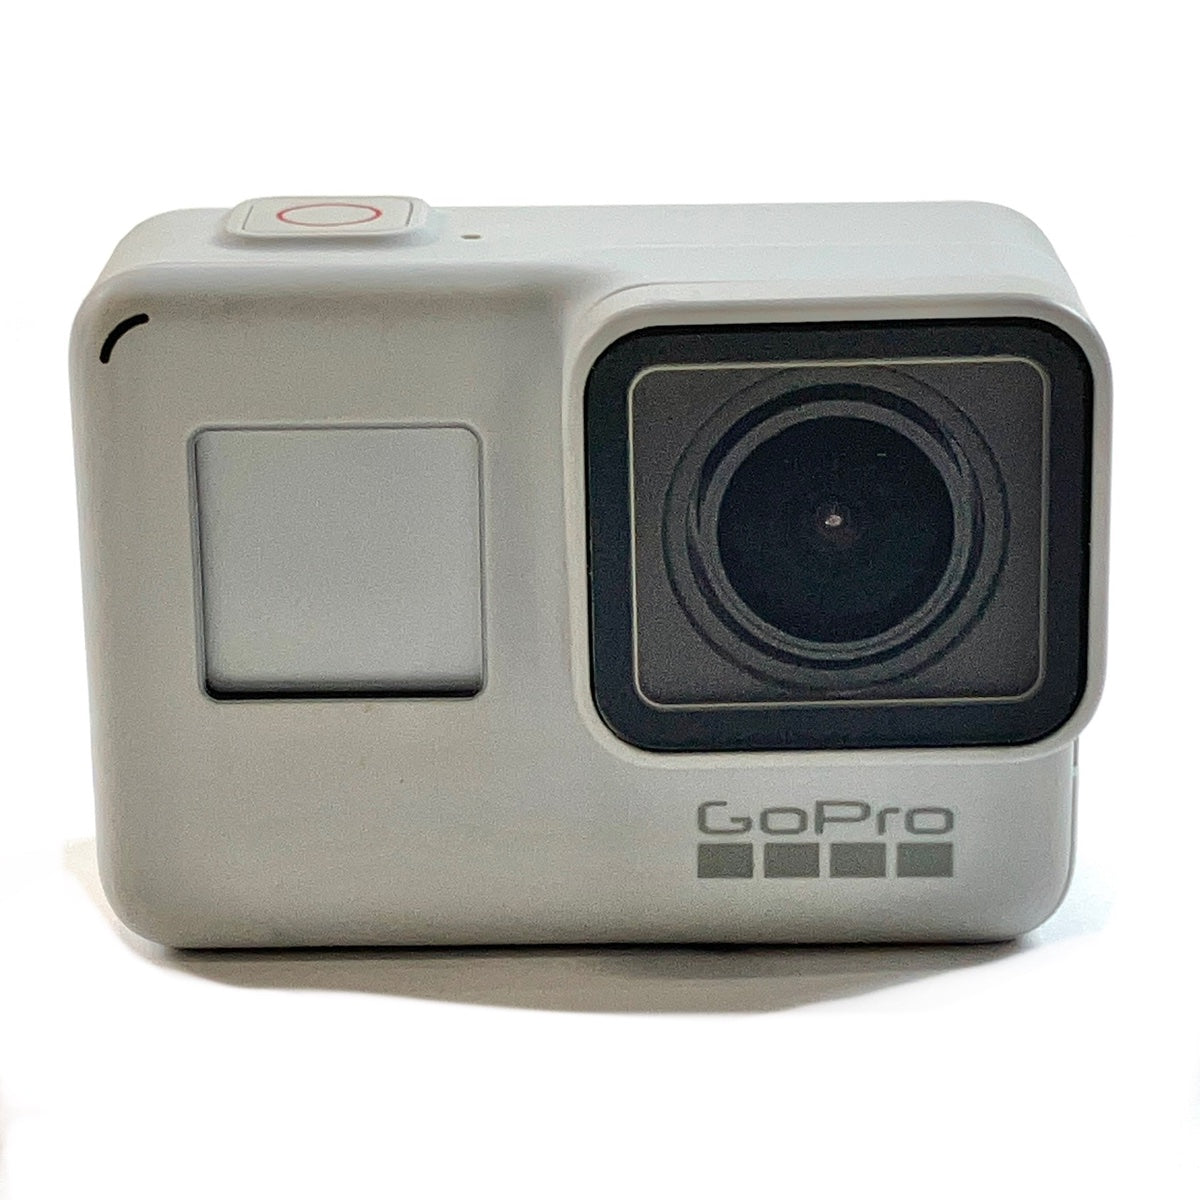 バイセル公式】ゴープロ GoPro HERO 7 BLACK Limited Edition ホワイト コンパクトデジタルカメラ 【中古】 -  バイセルブランシェ